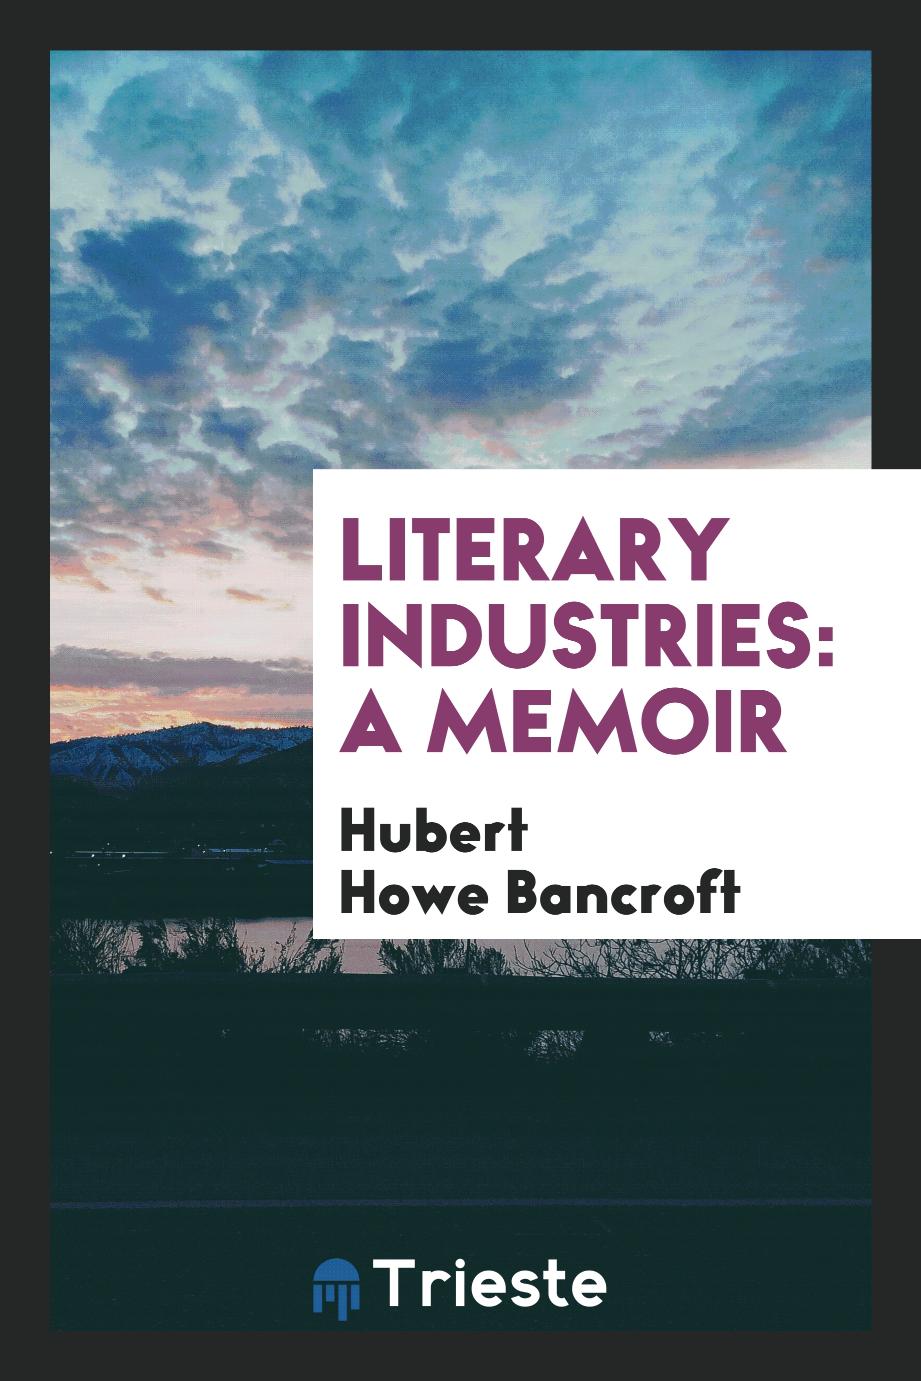 Literary industries: a memoir